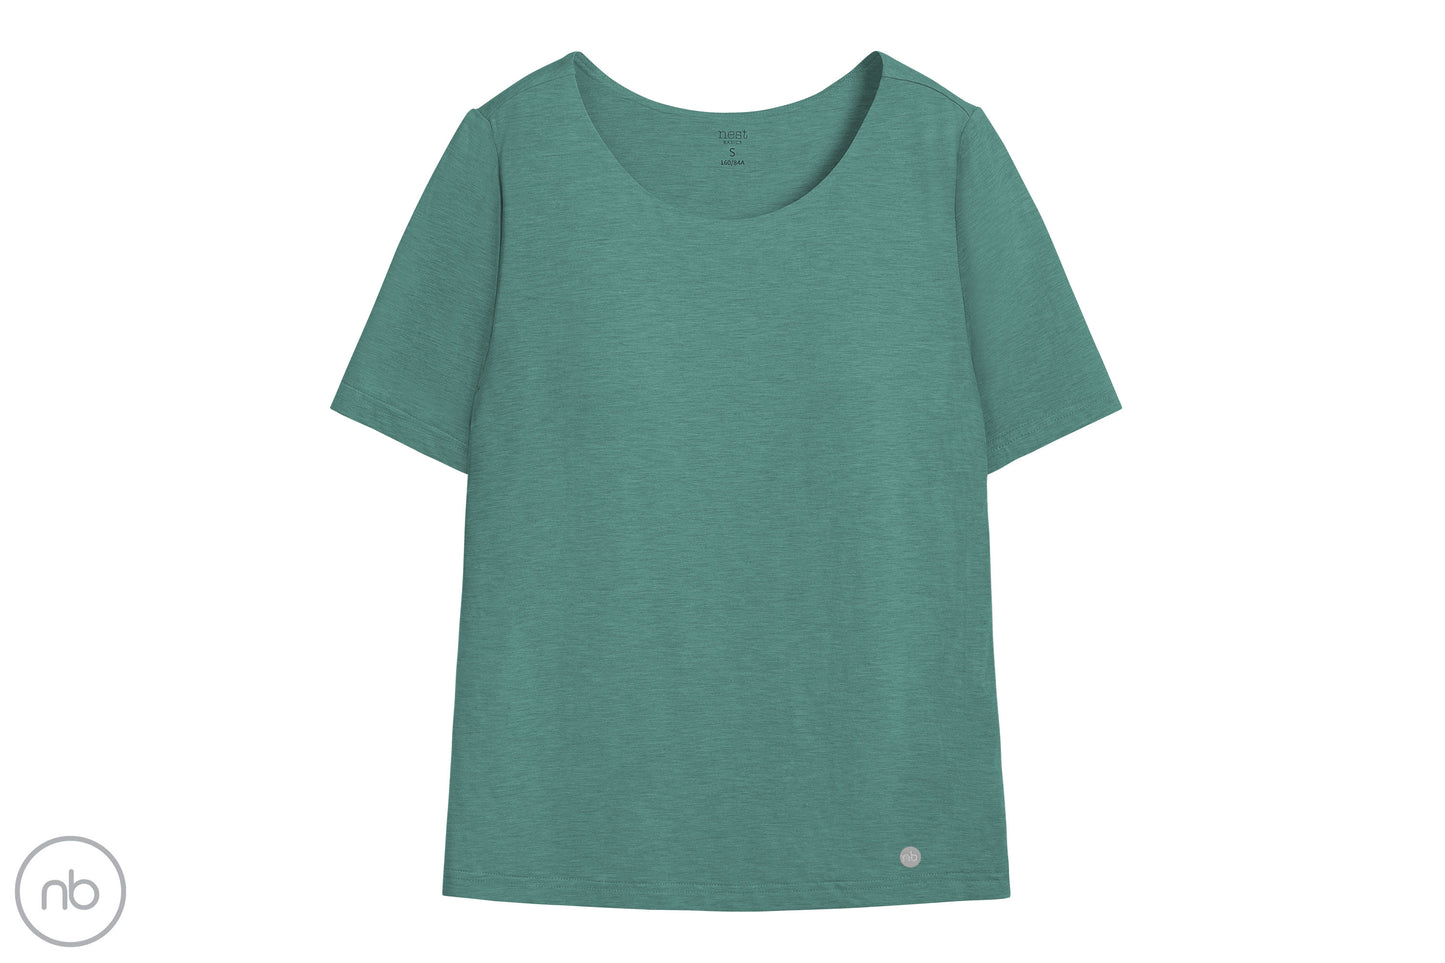 Basics Women's Bra T-Shirt (Bamboo) - Misty Moss